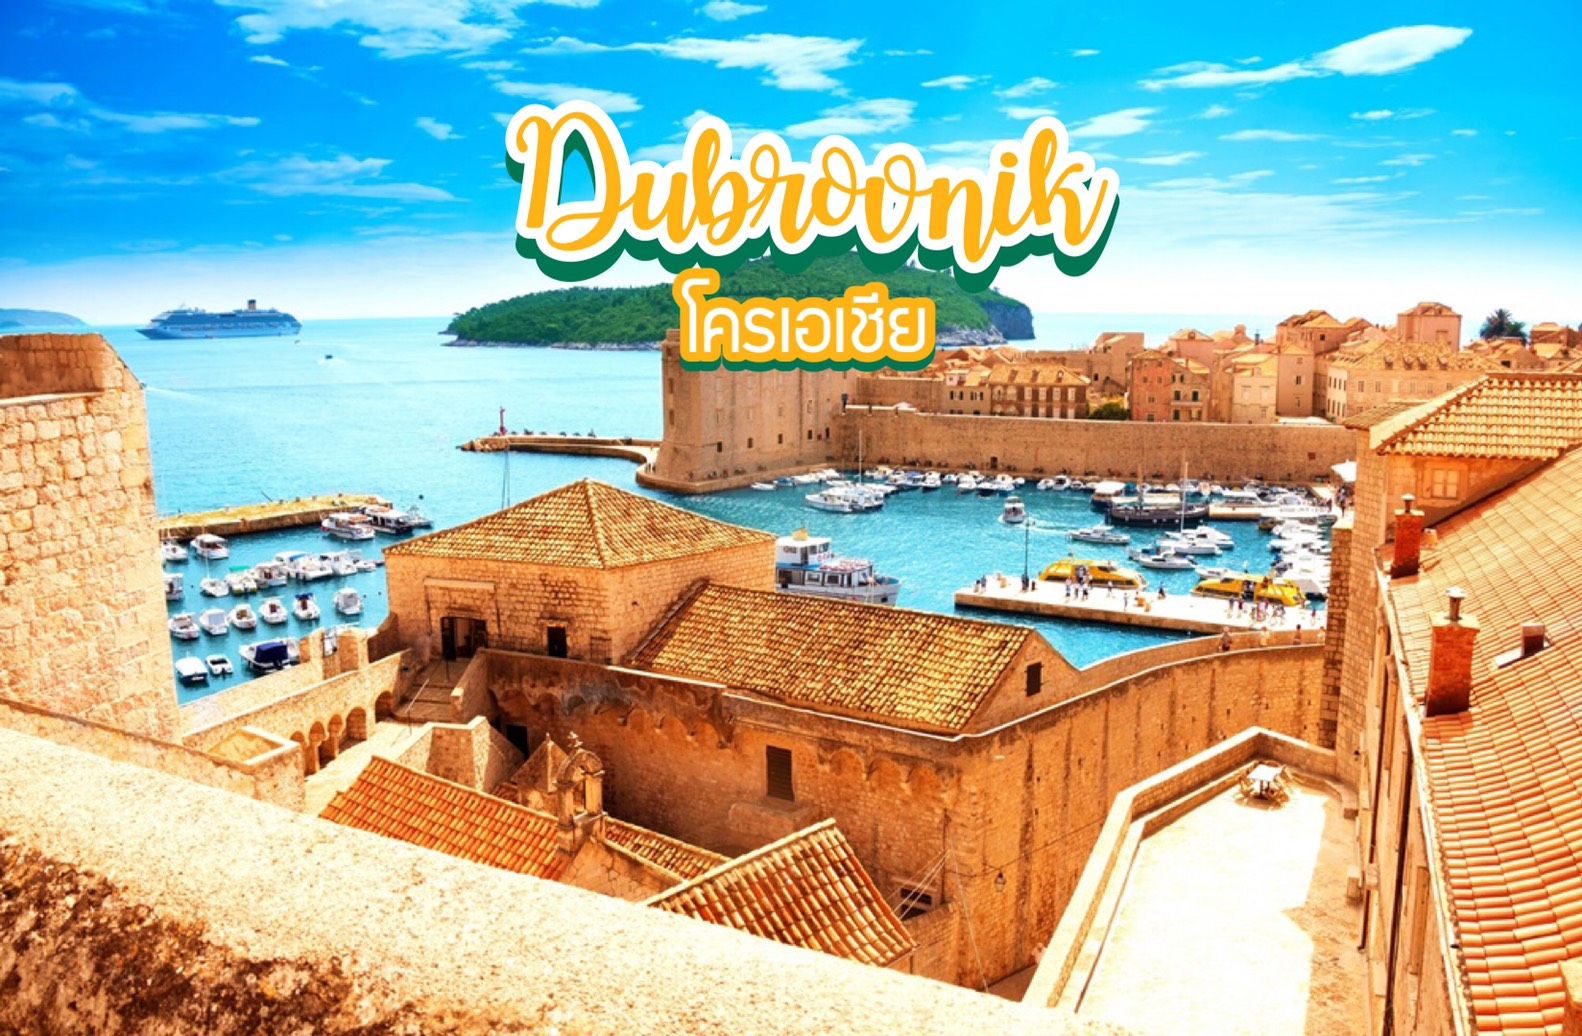 ดูบรอฟนิก Dubrovnik โครเอเชีย